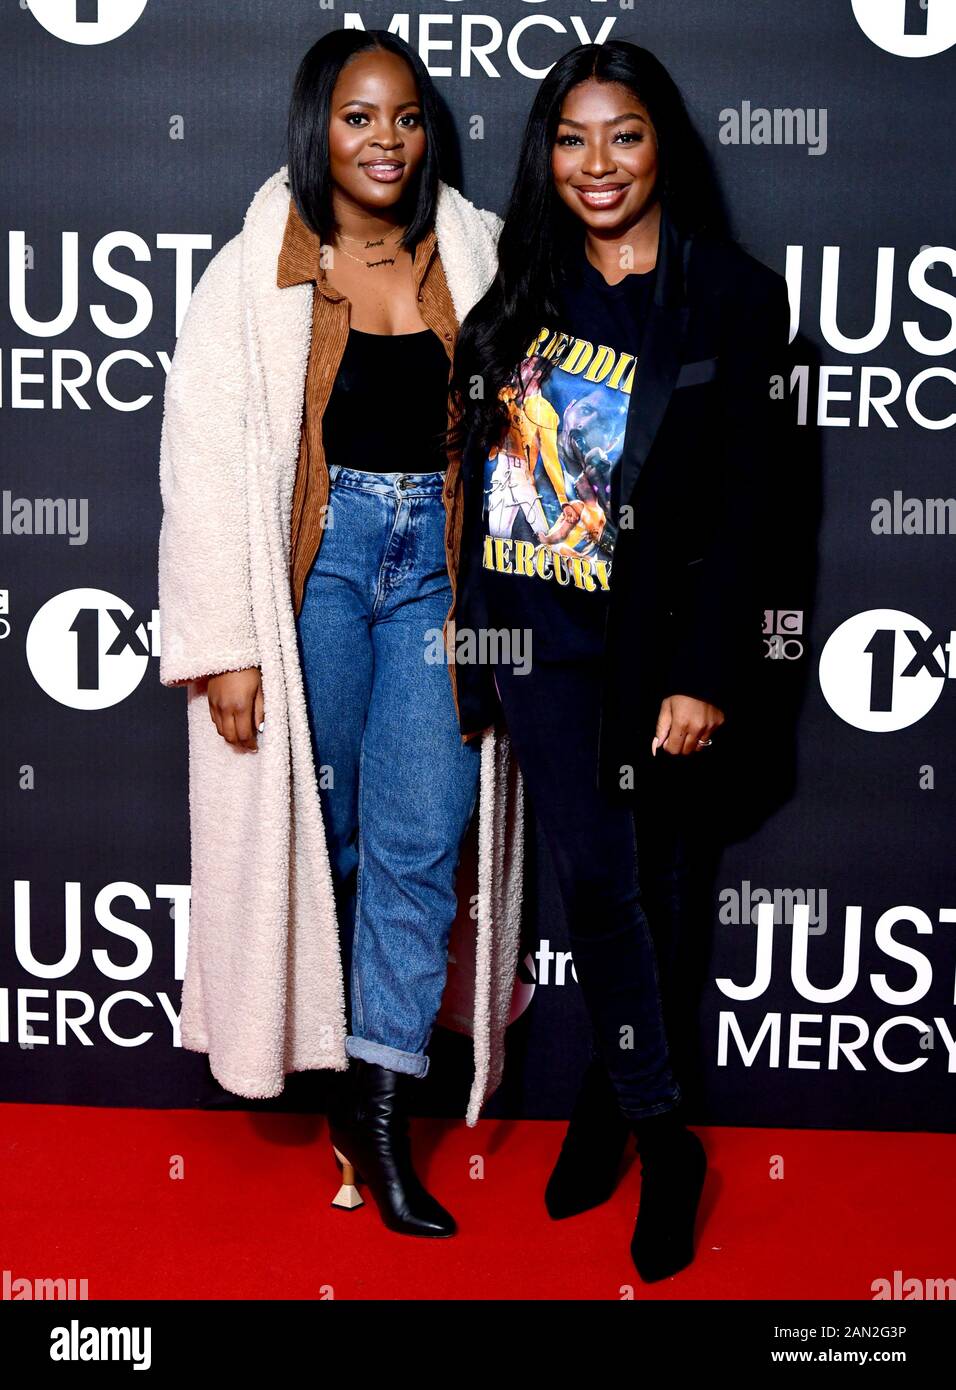 Audrey Akande e Tolani Shoneye partecipano allo screening speciale del Regno Unito Di Just Mercy tenutosi al Vue Cinema di Leicester Square a Londra. Foto Stock